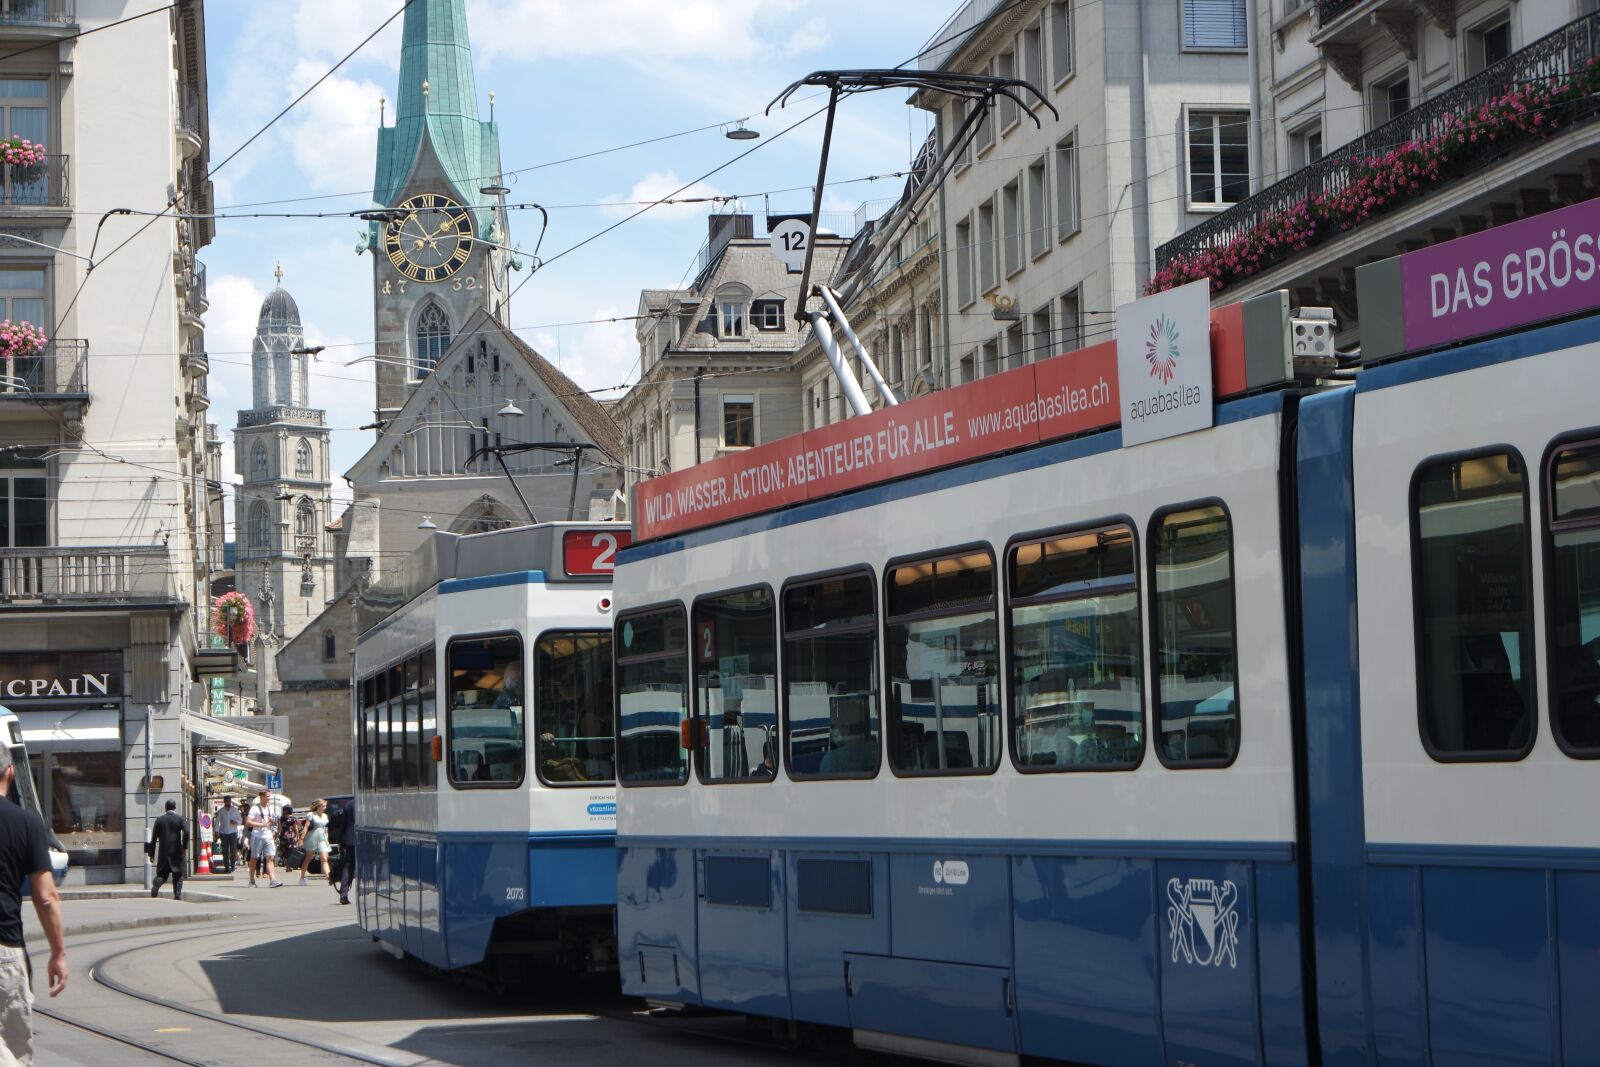 Samsung NX3000 sample photo. Zurich, parade ground, tram photography